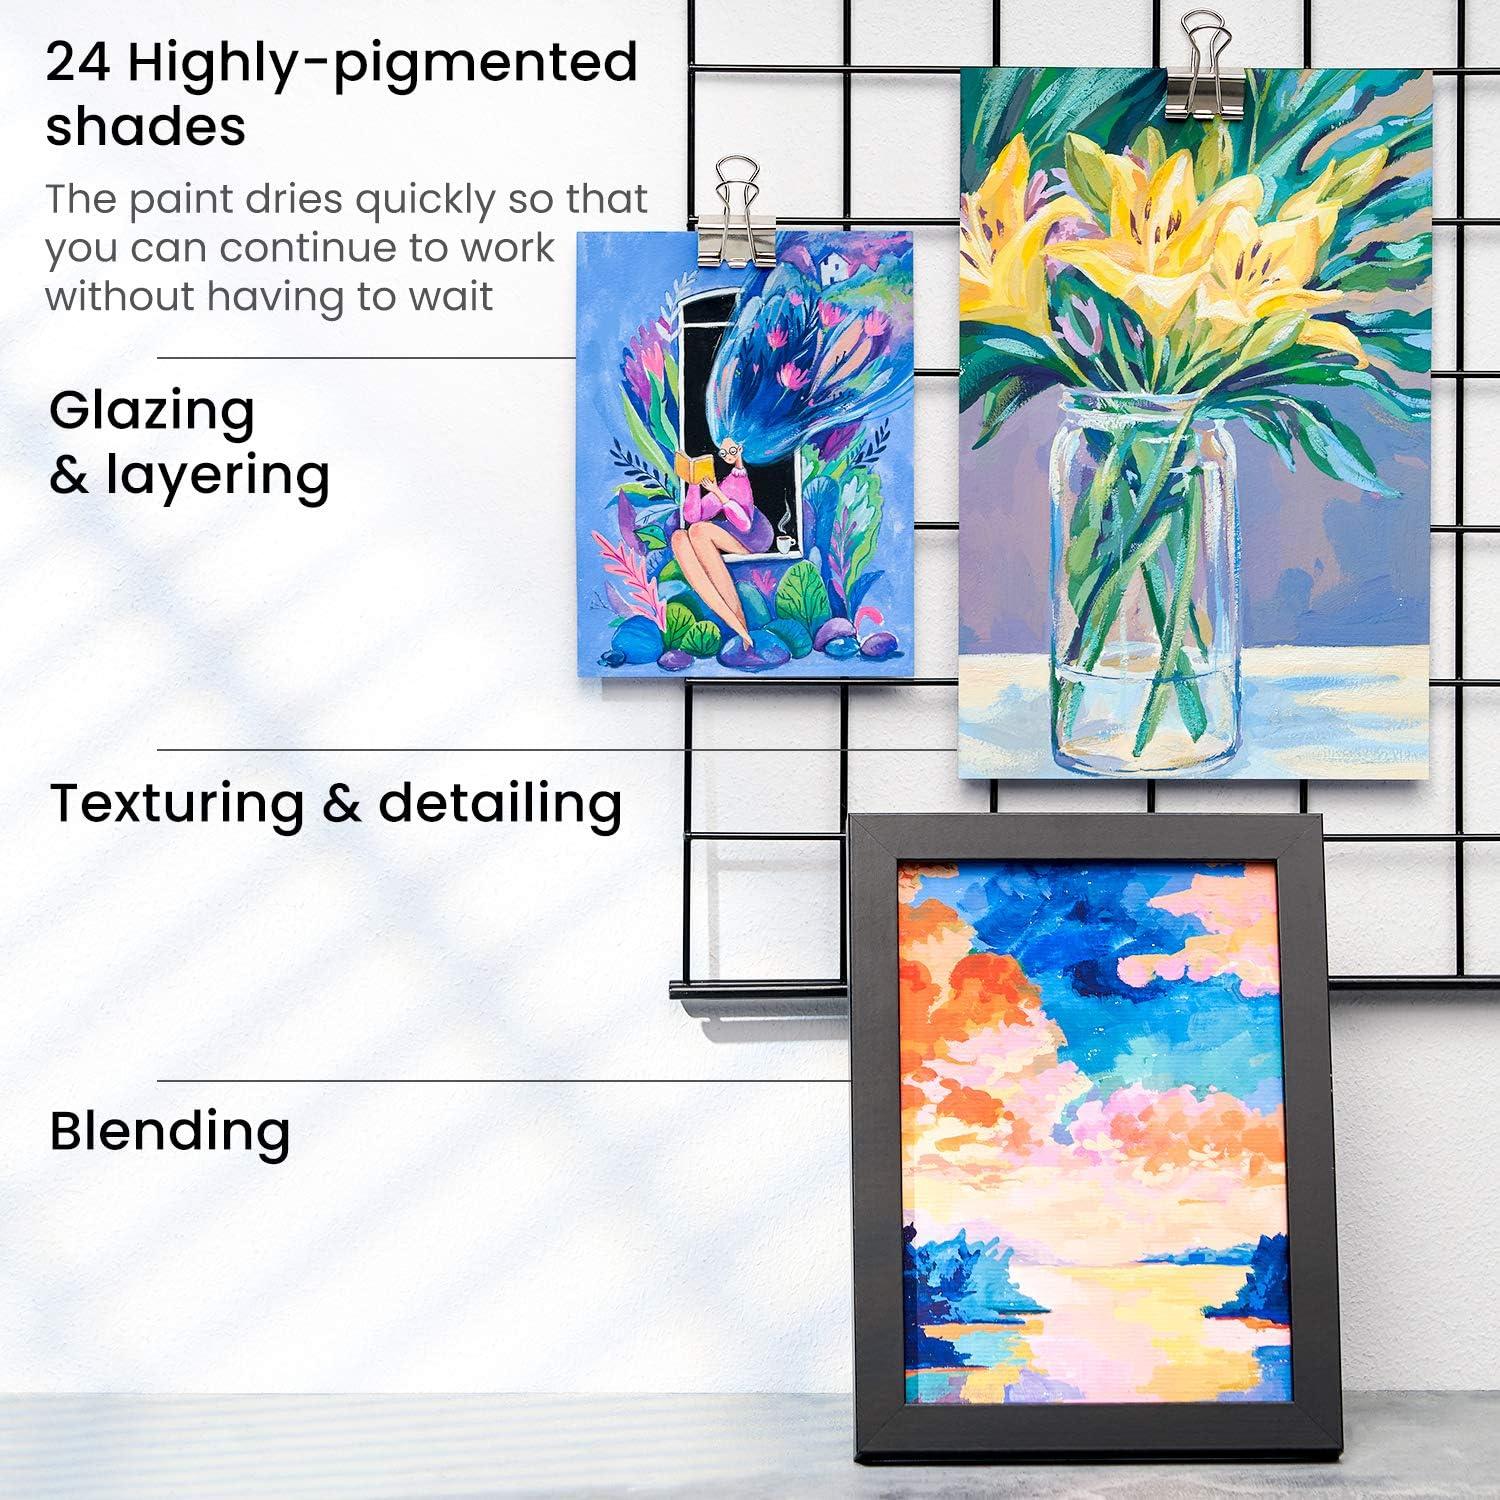 Buy ARTEZA Oil Paint Set, 24 Colors in 12ml/0.4 US fl oz Tubes